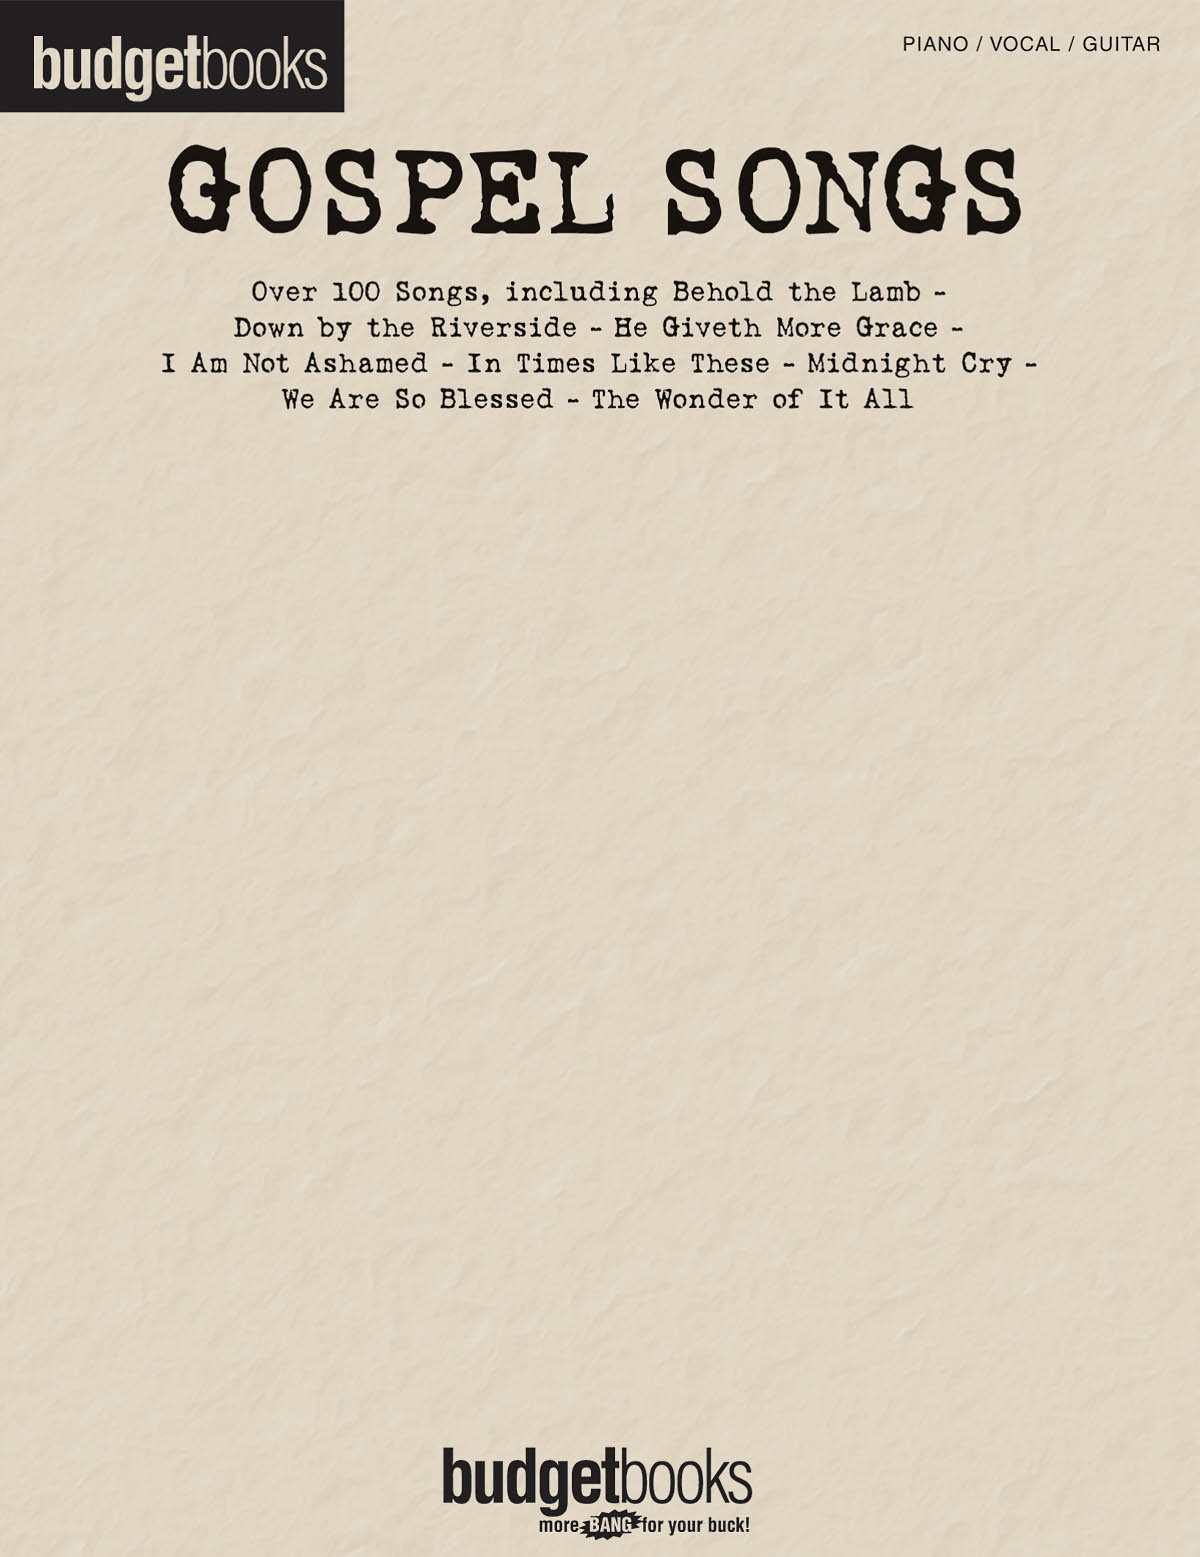 Budgetbooks: Gospel Songs